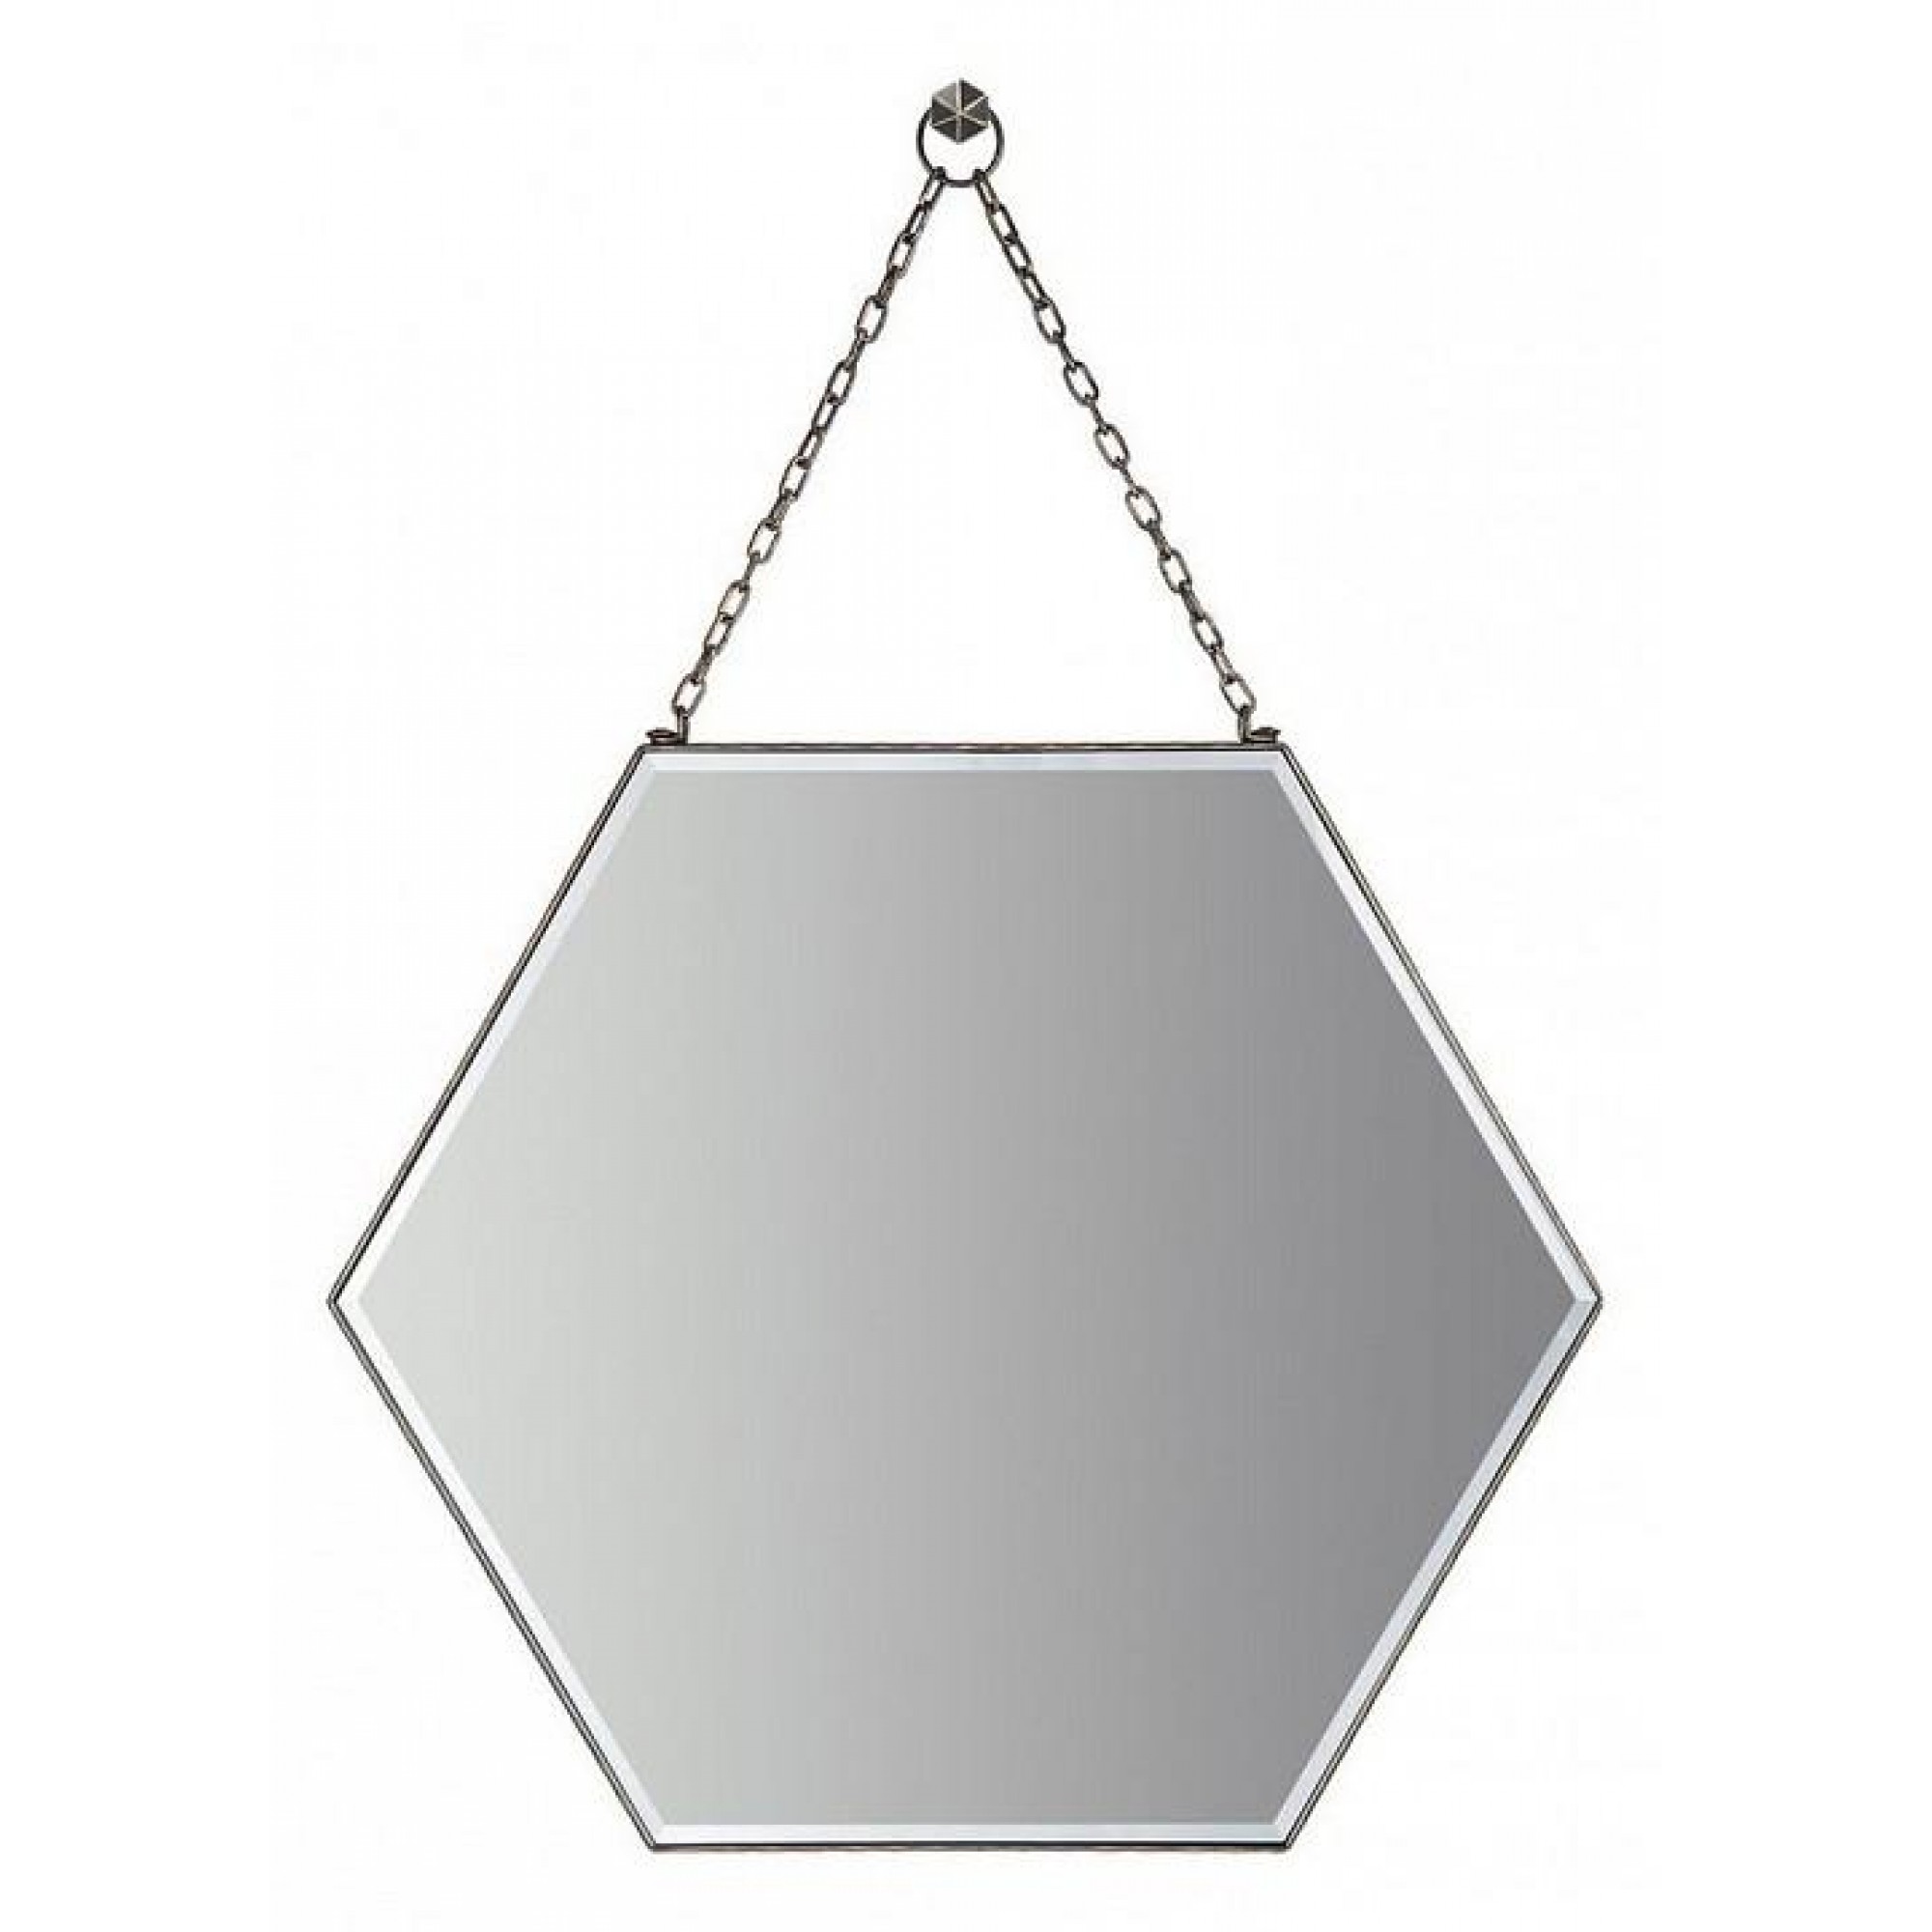 Зеркало настенное Шестиугольник V20112 черный RDN_V20112